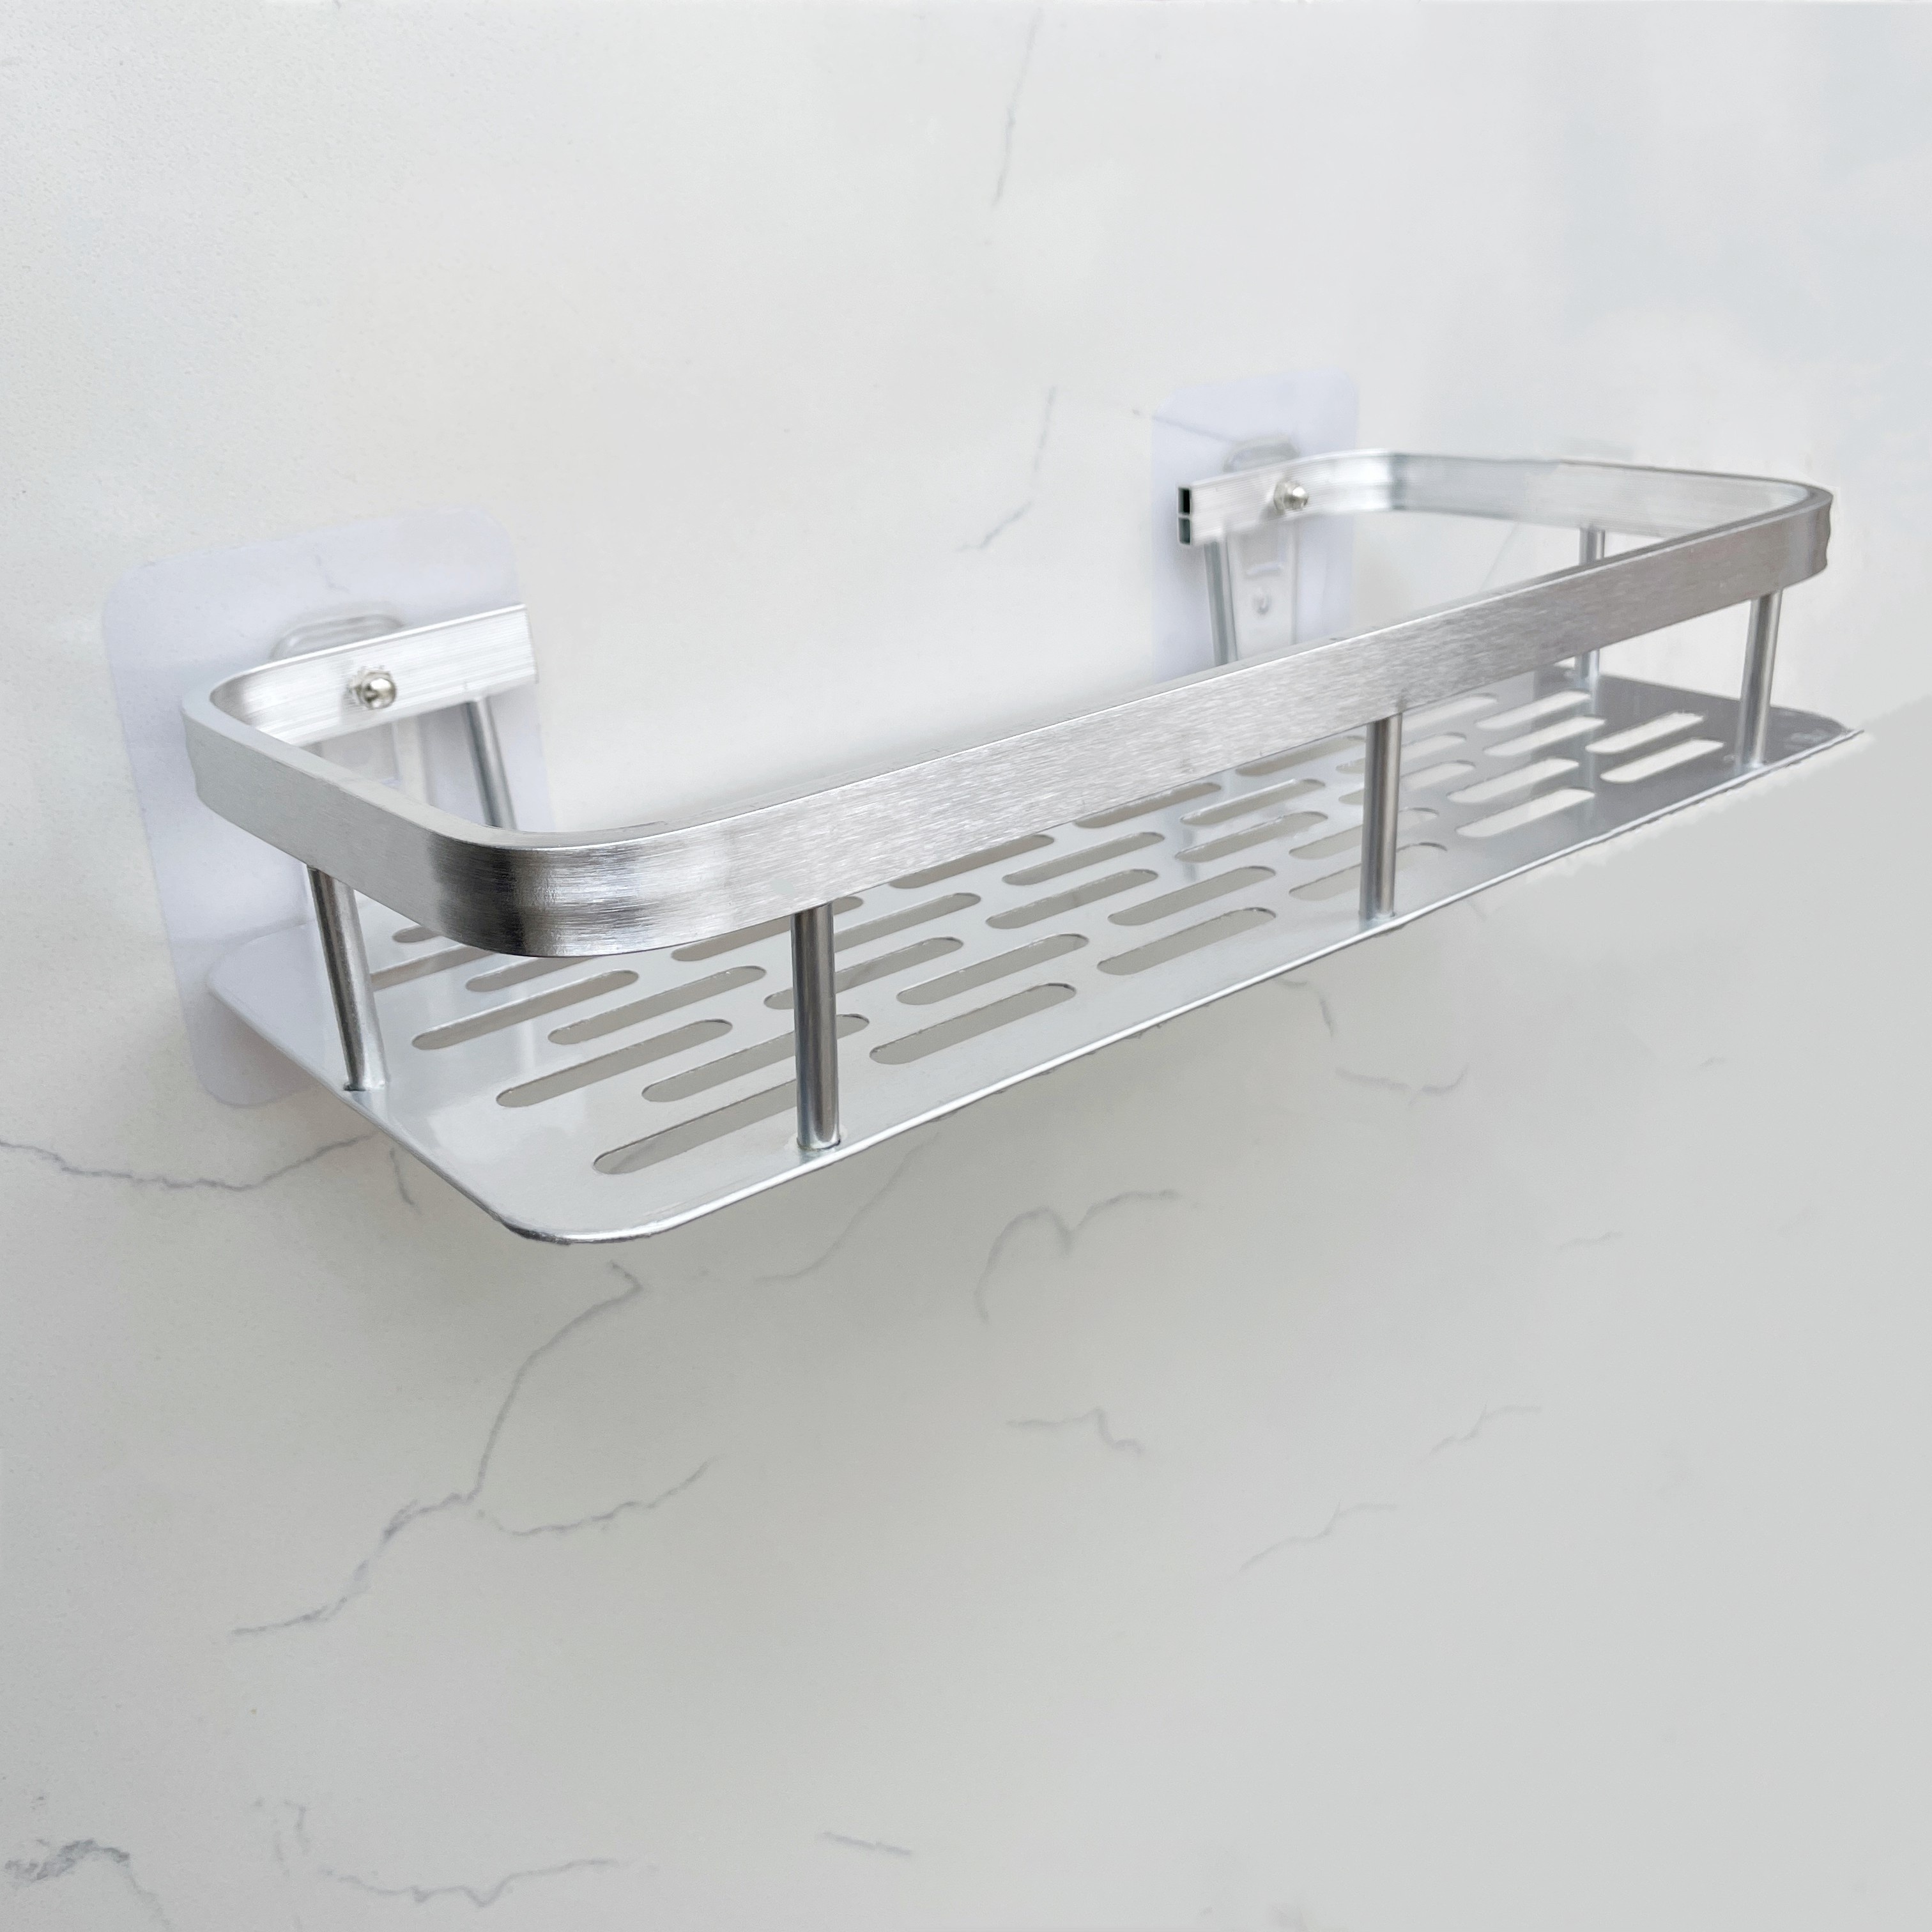 Portaduchas sin taladro, soporte de gel de ducha de baño de aluminio para  almacenamiento y organización del baño (2 niveles, negro)